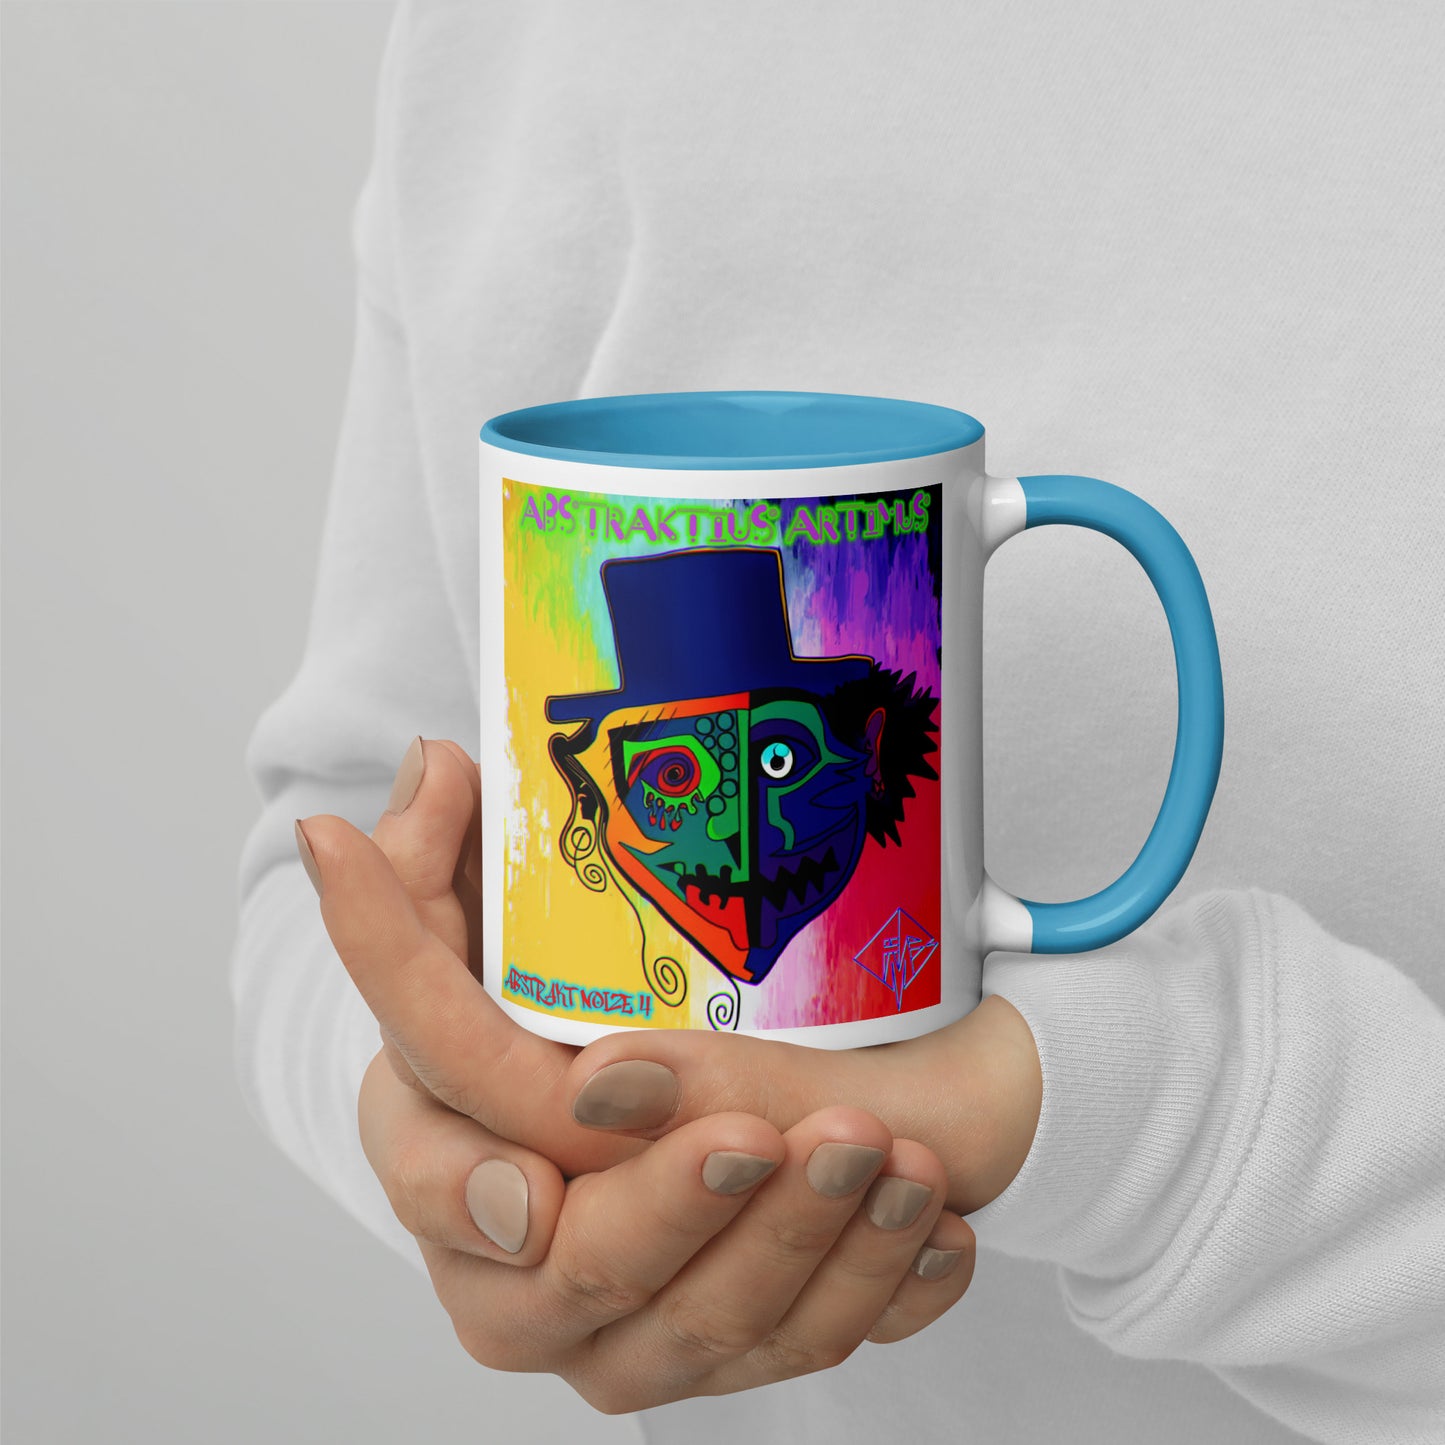 Abstraktius Artimus - Abstrakt Noize 4 Mug With Color Inside